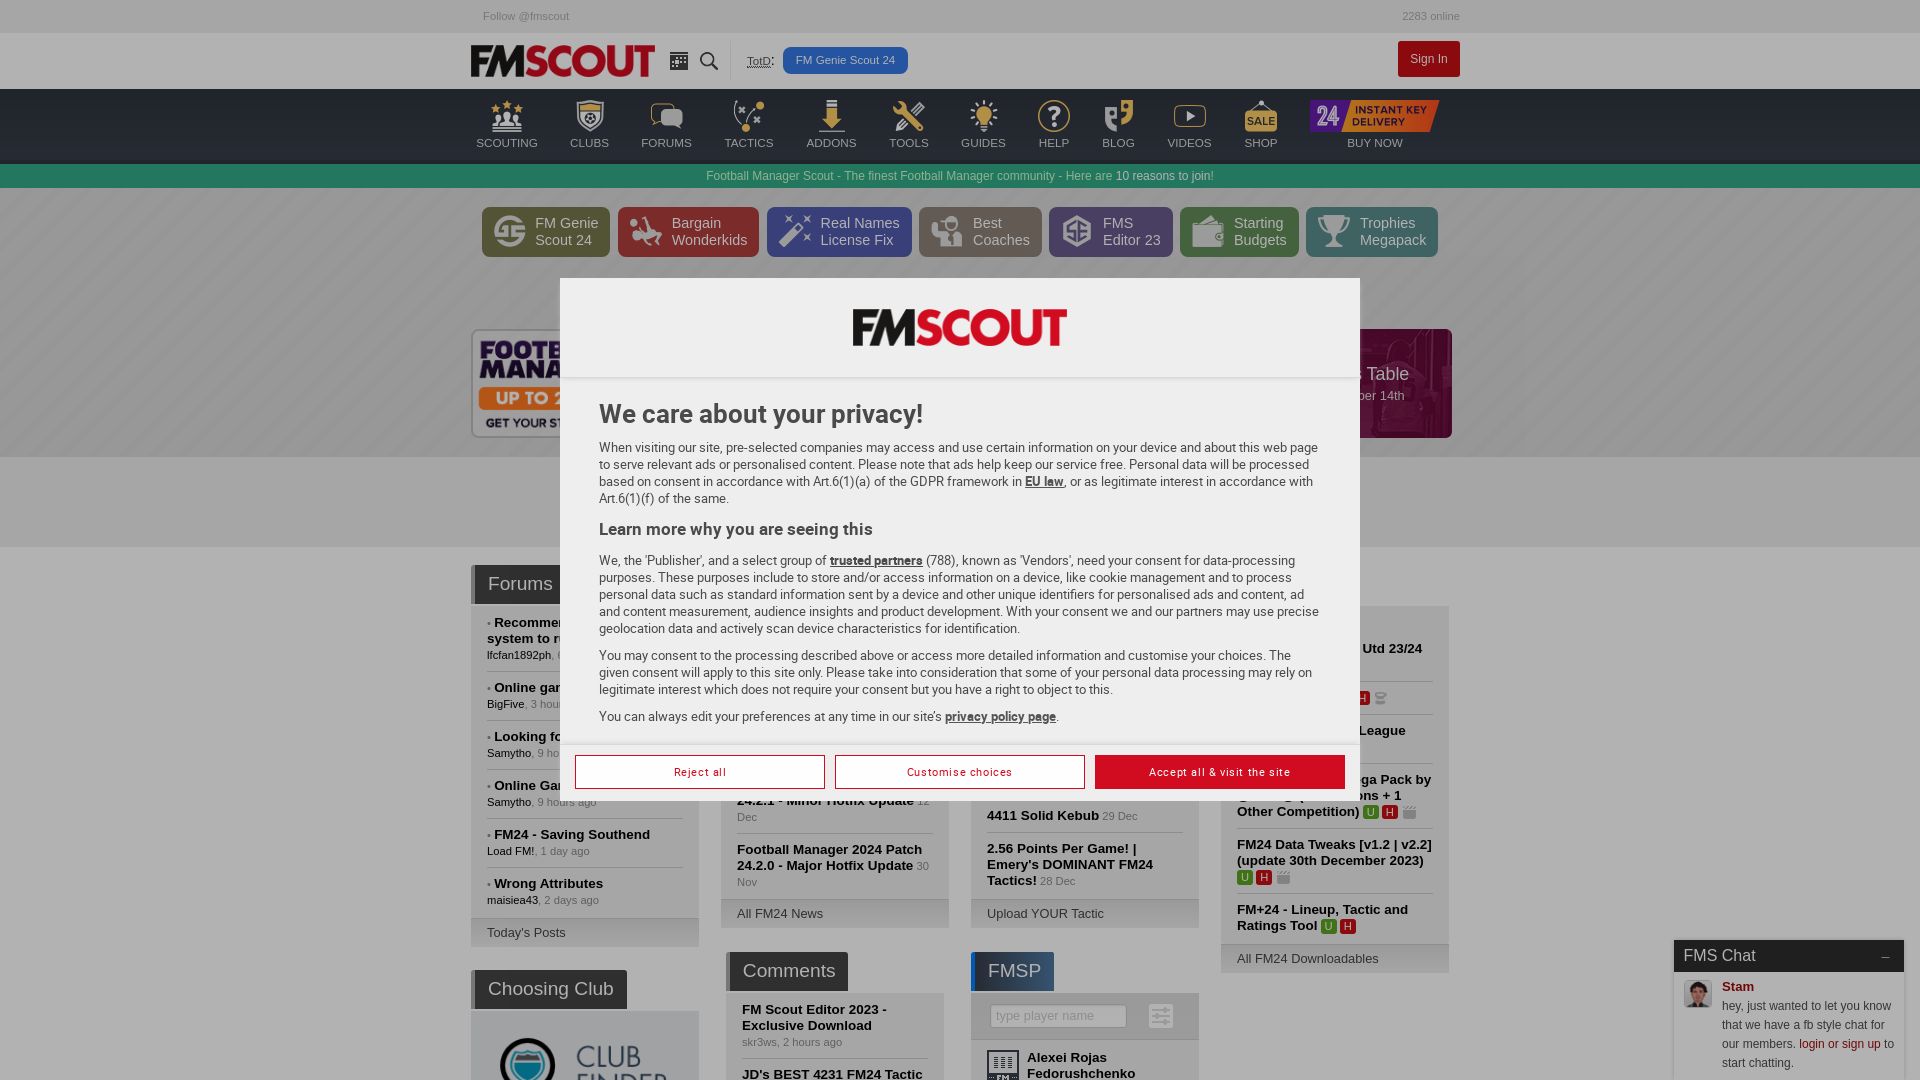 Stato del sito web fmscout.com è   ONLINE